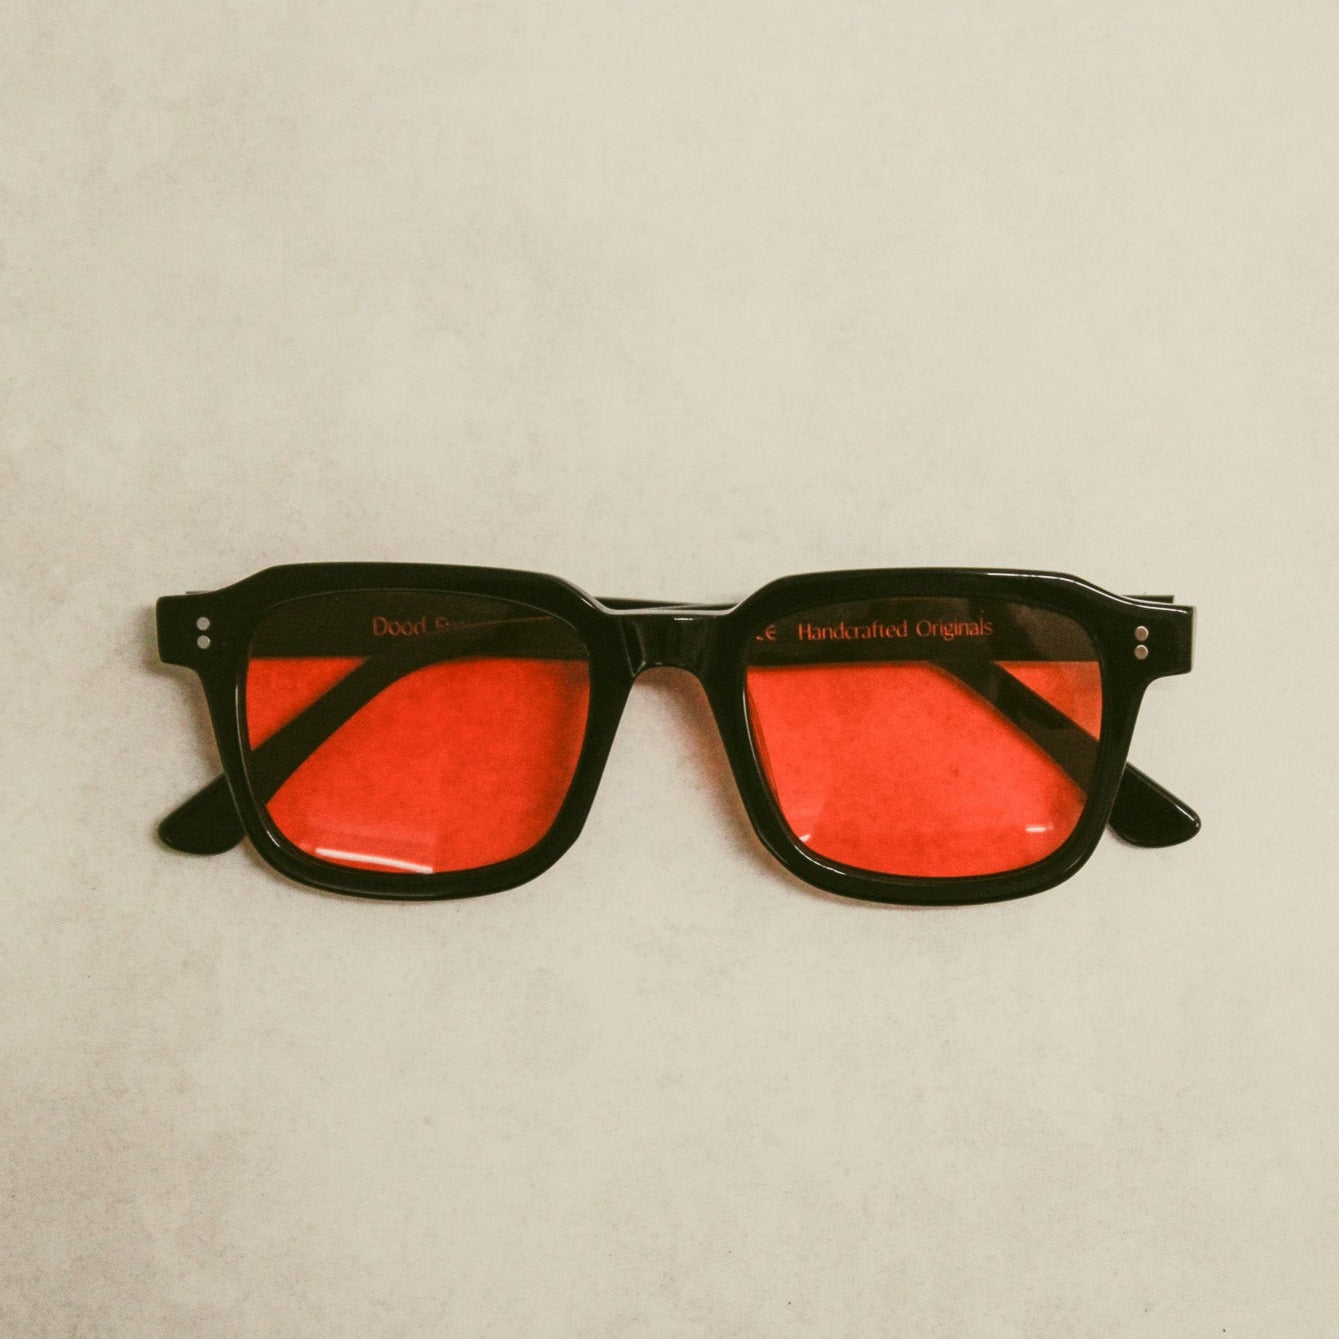 160 Black Frame with Orange Lenses